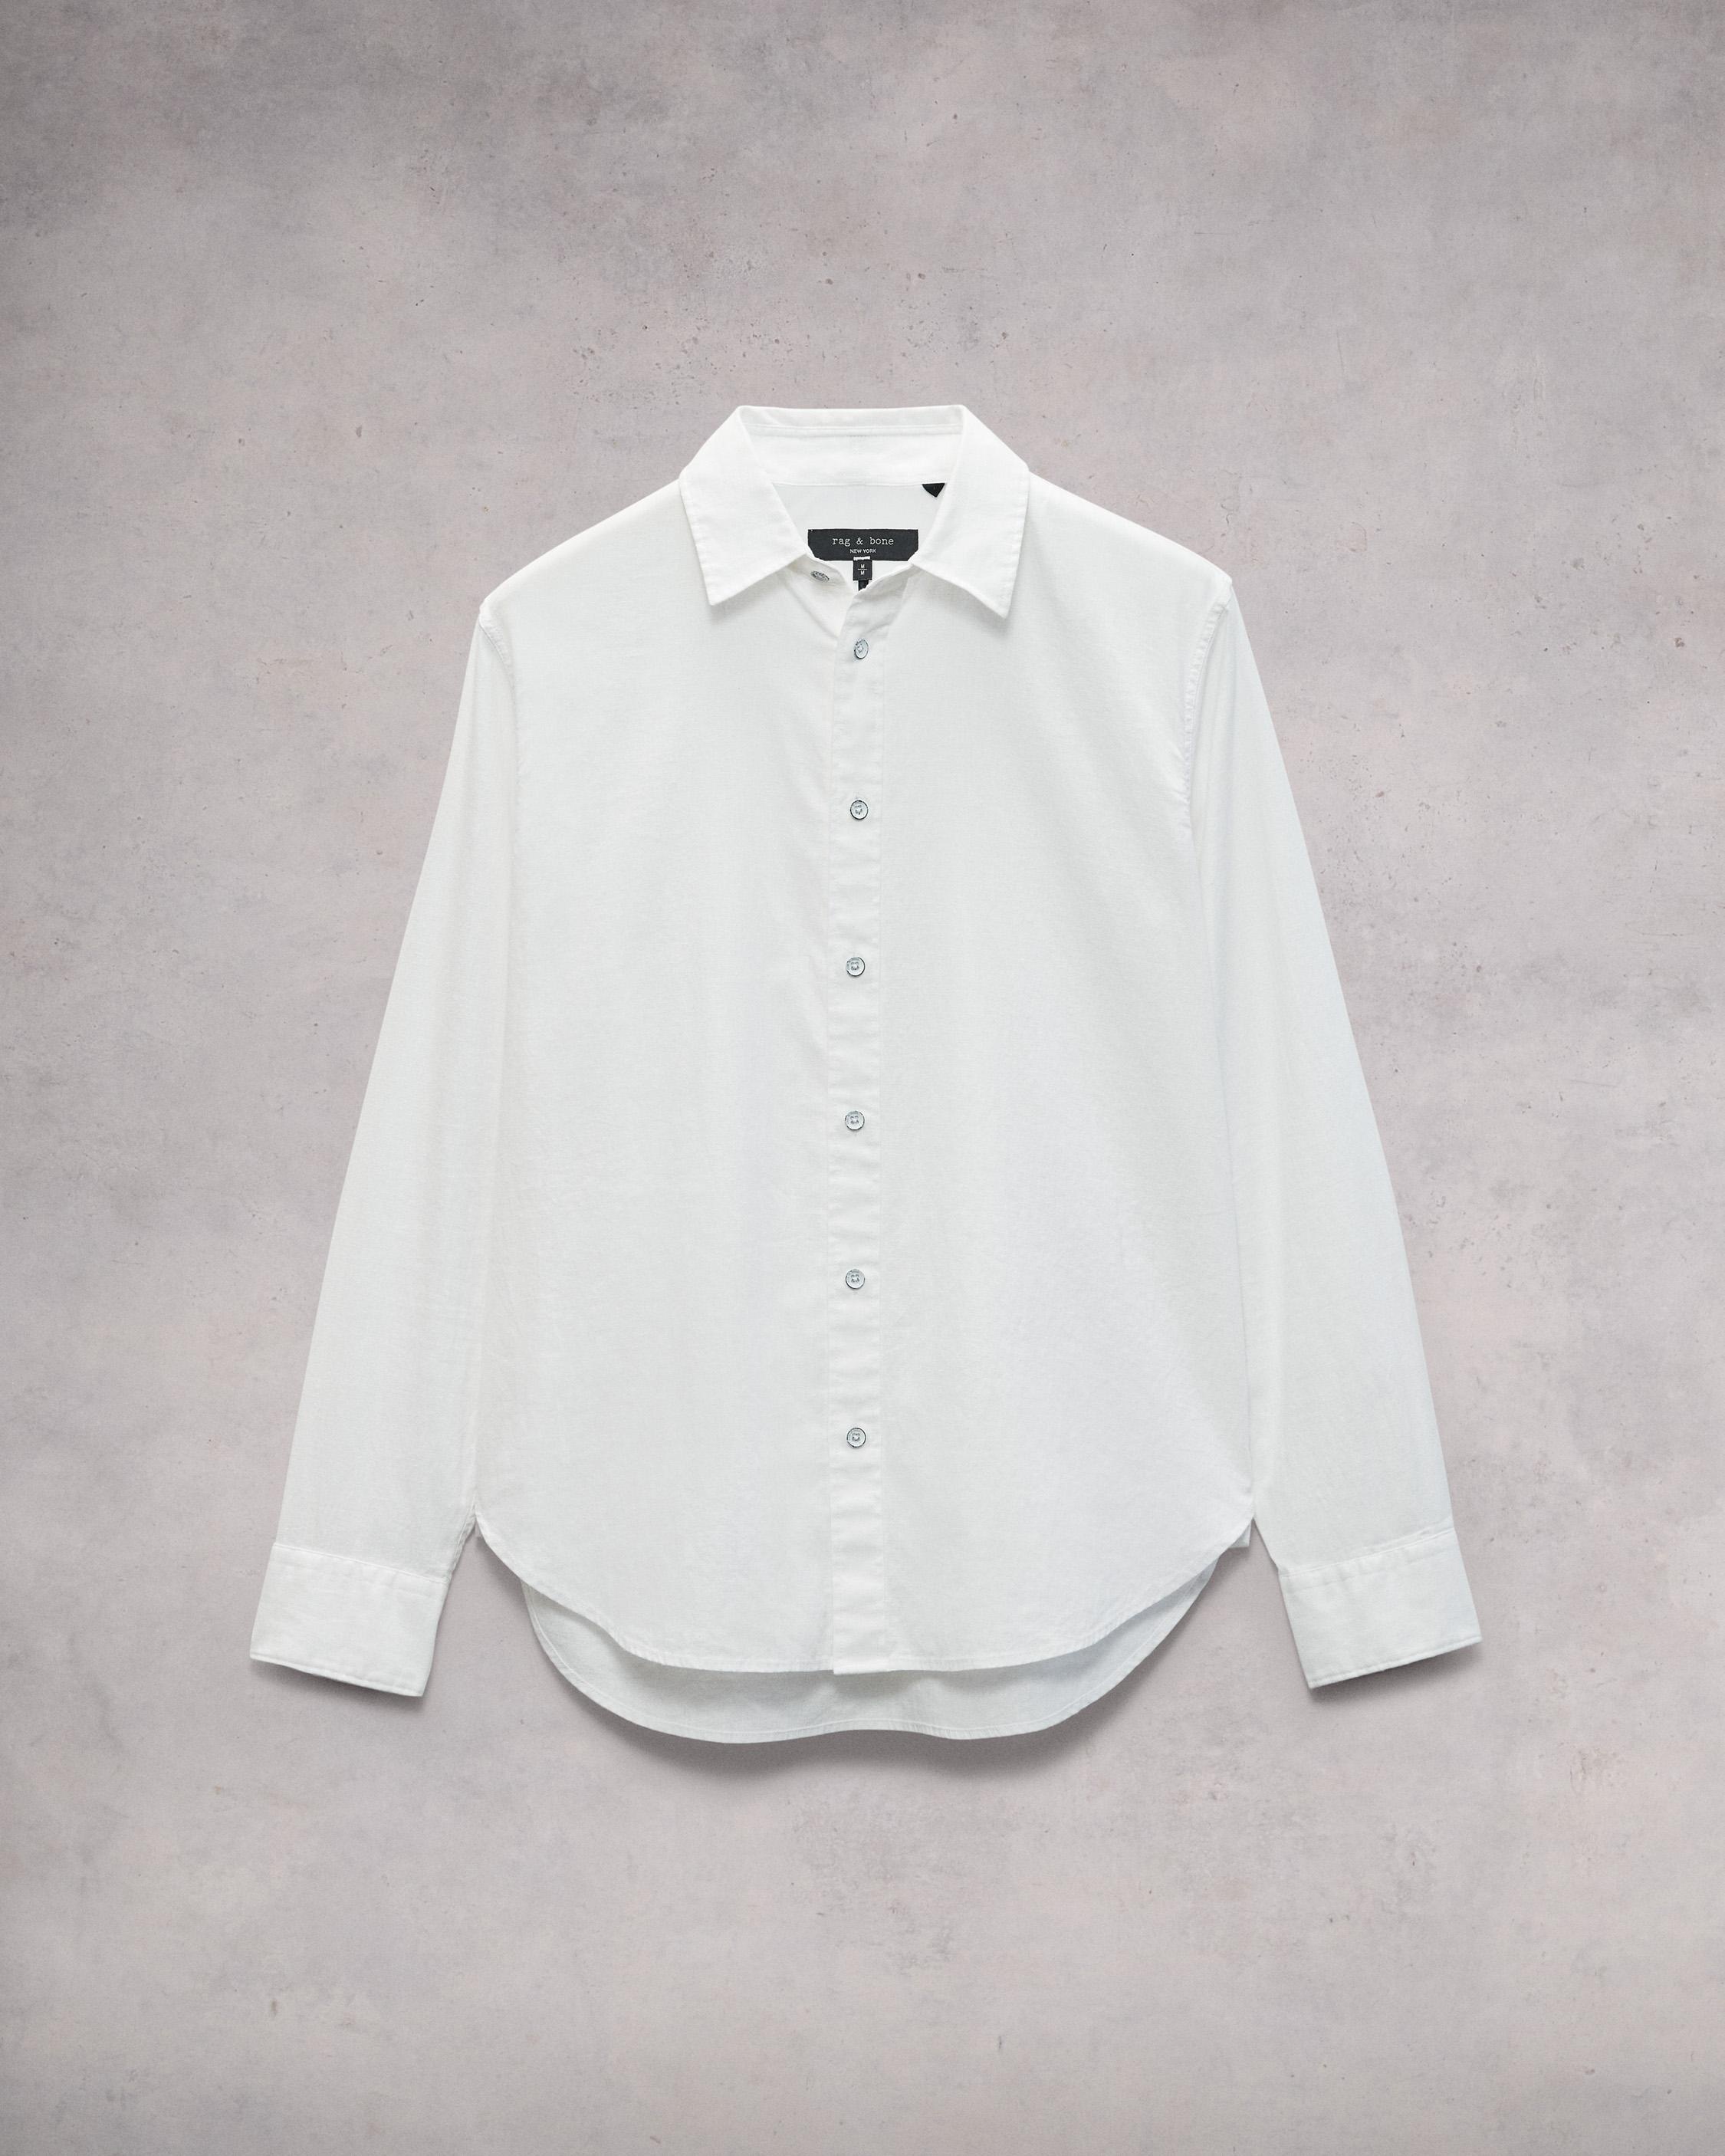 Finch Cotton Hemp Shirt
Relaxed Fit Button Down - 1